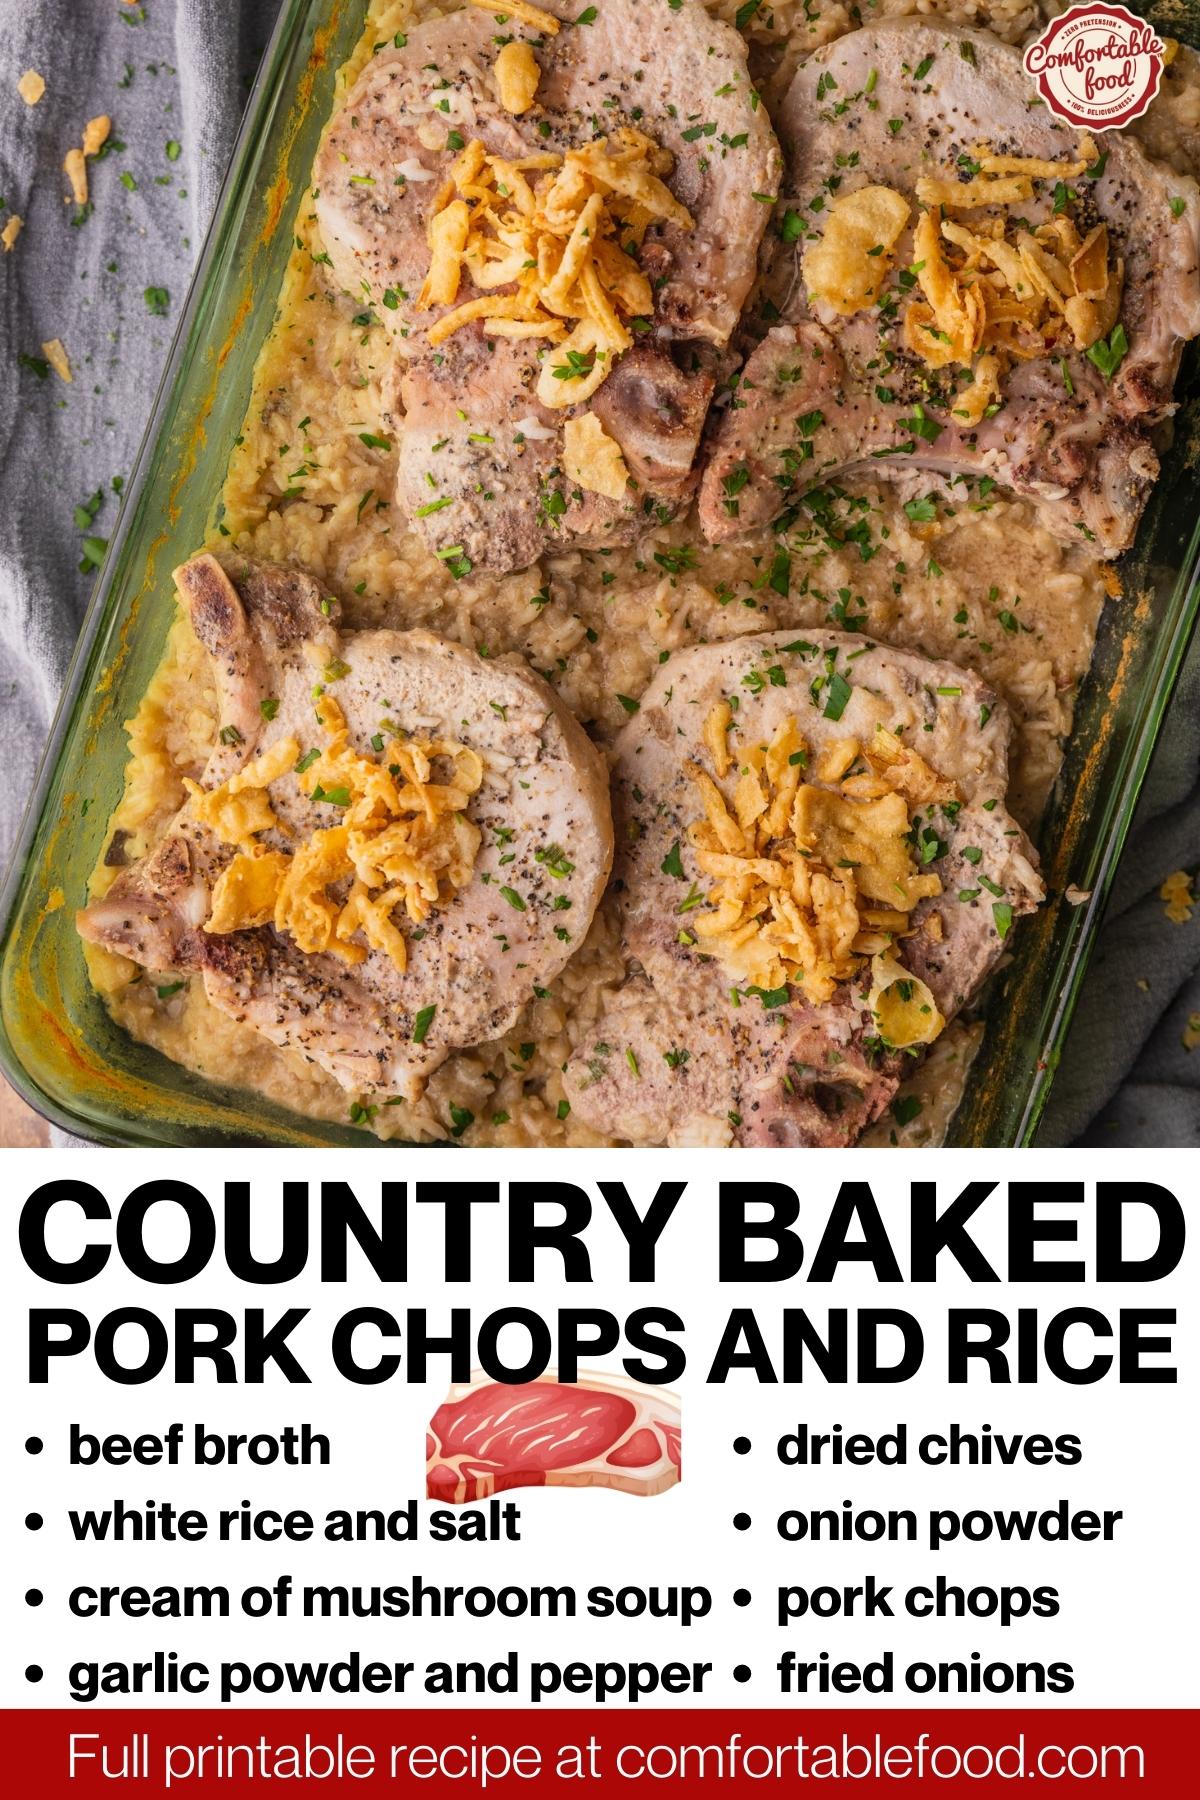 Pork-chop-rice-casserole - socials3